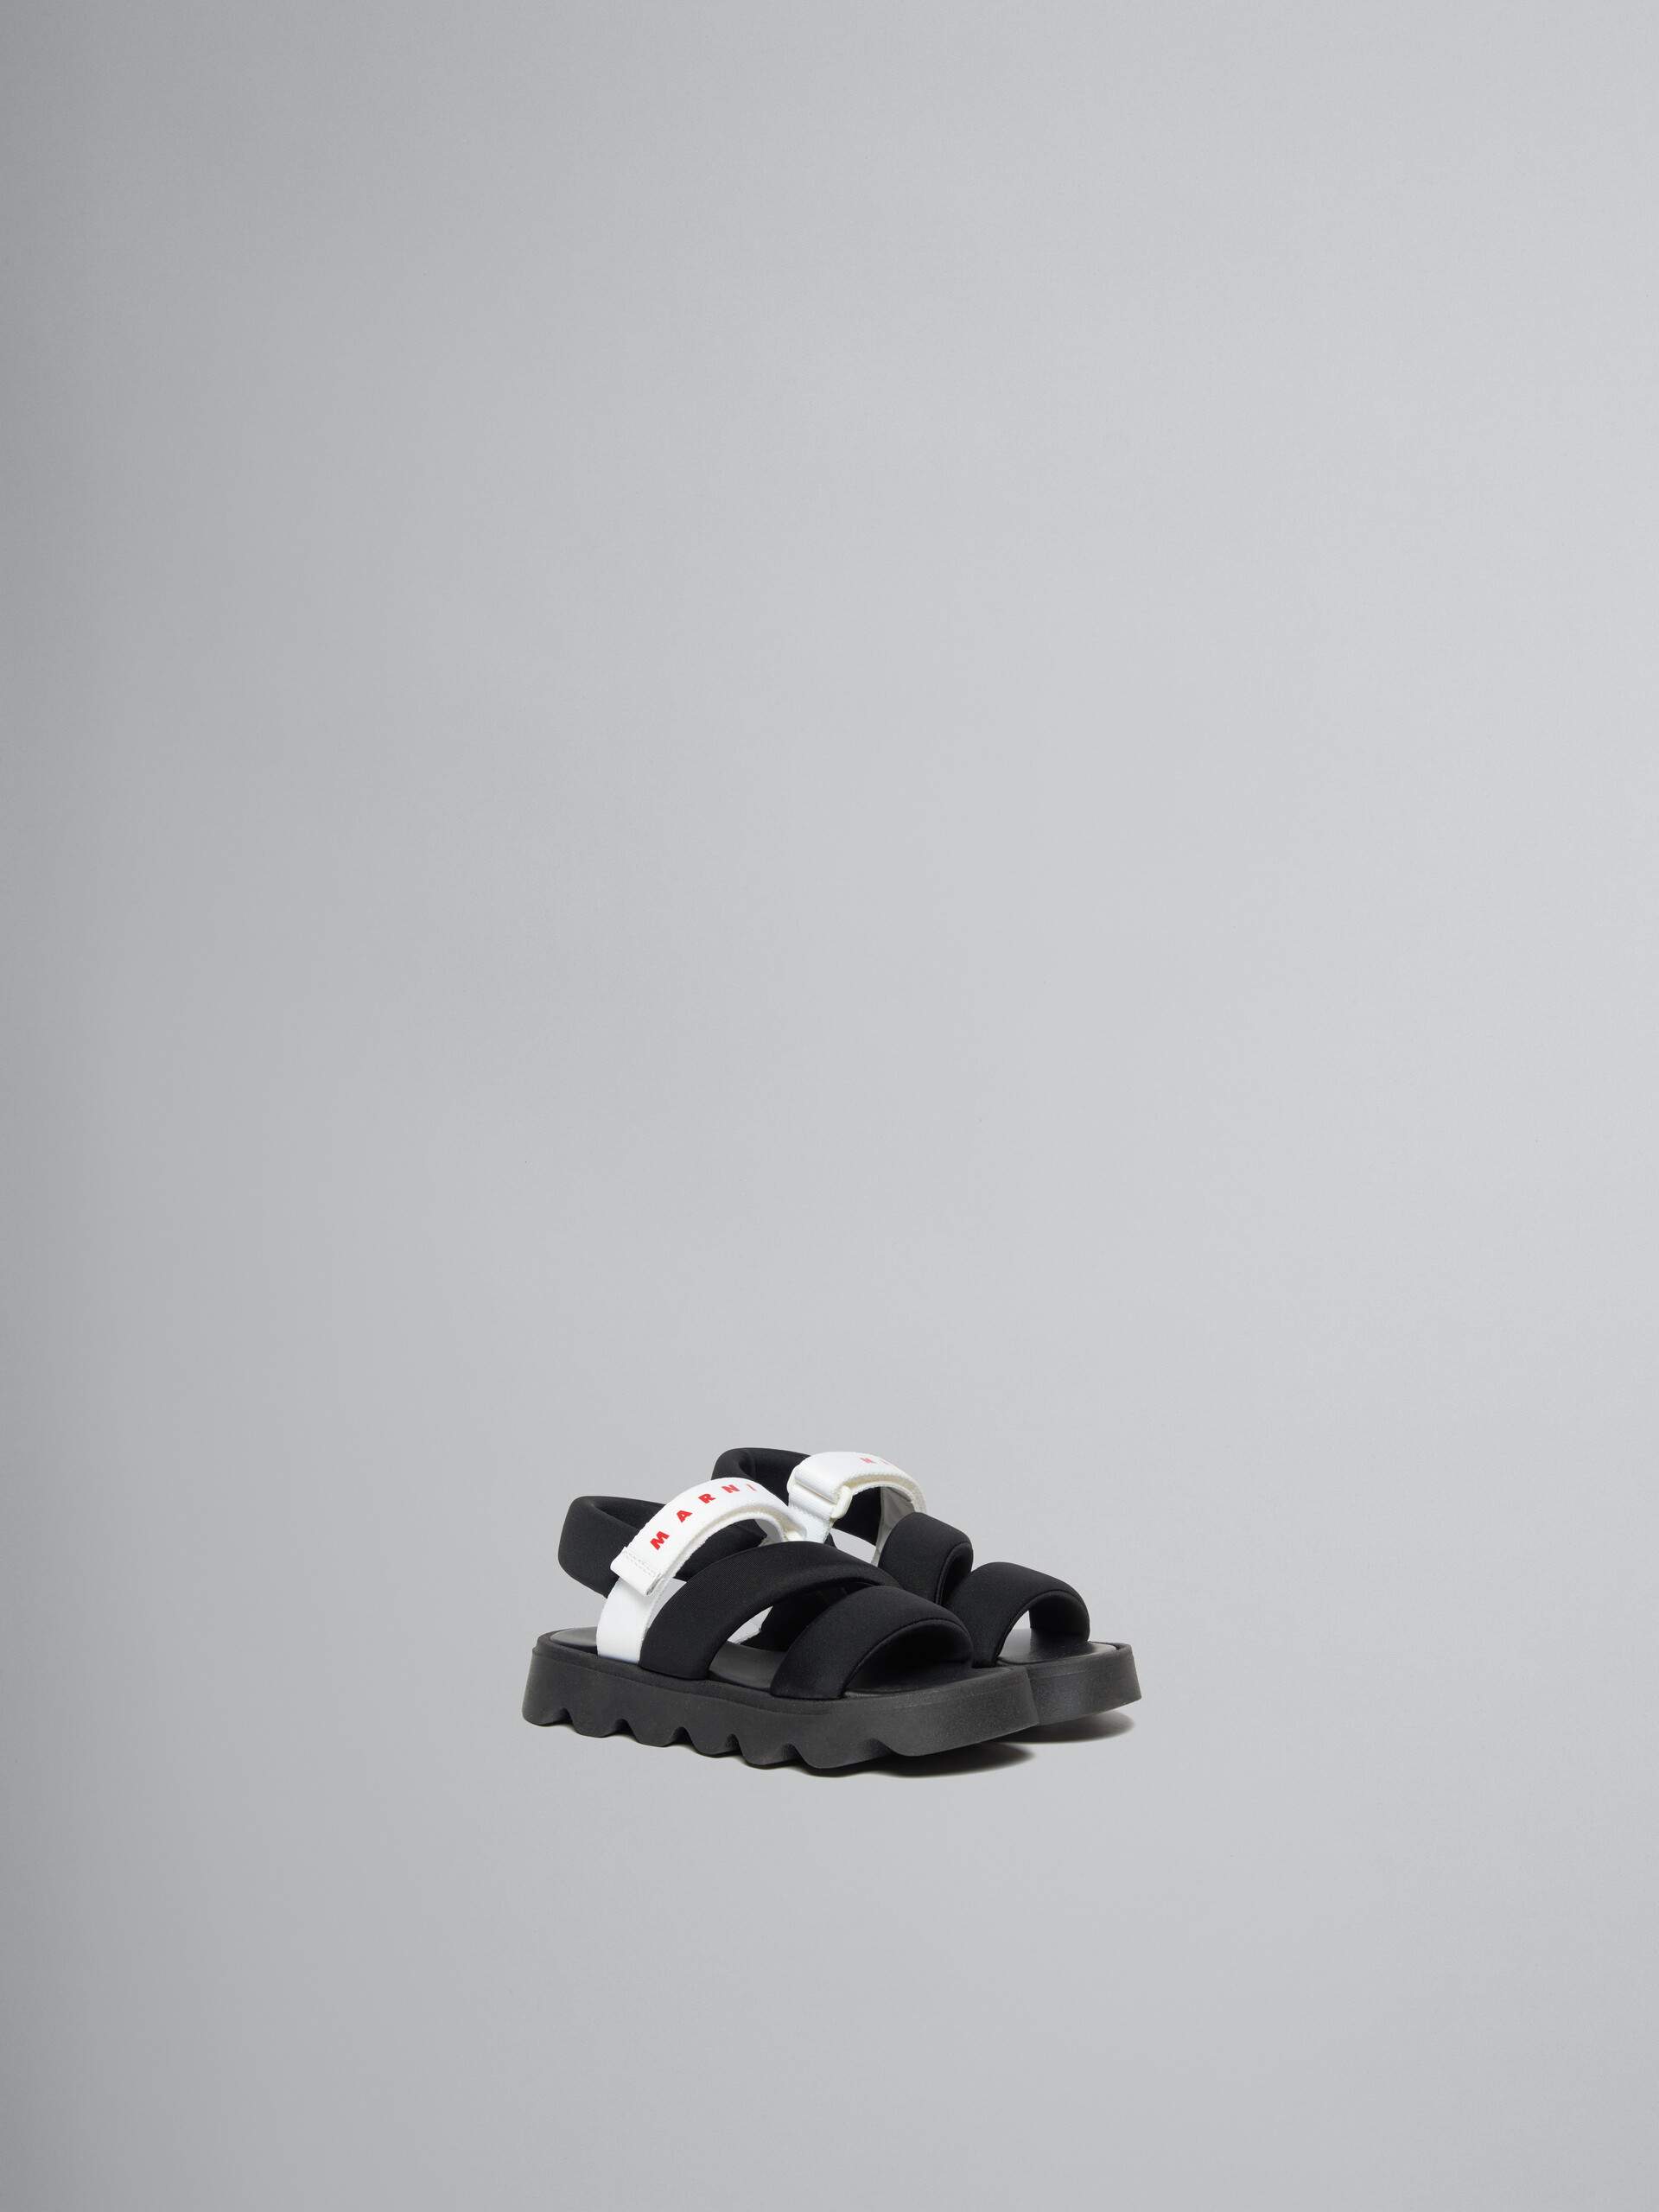 Sandales matelassé noir - ENFANT - Image 2